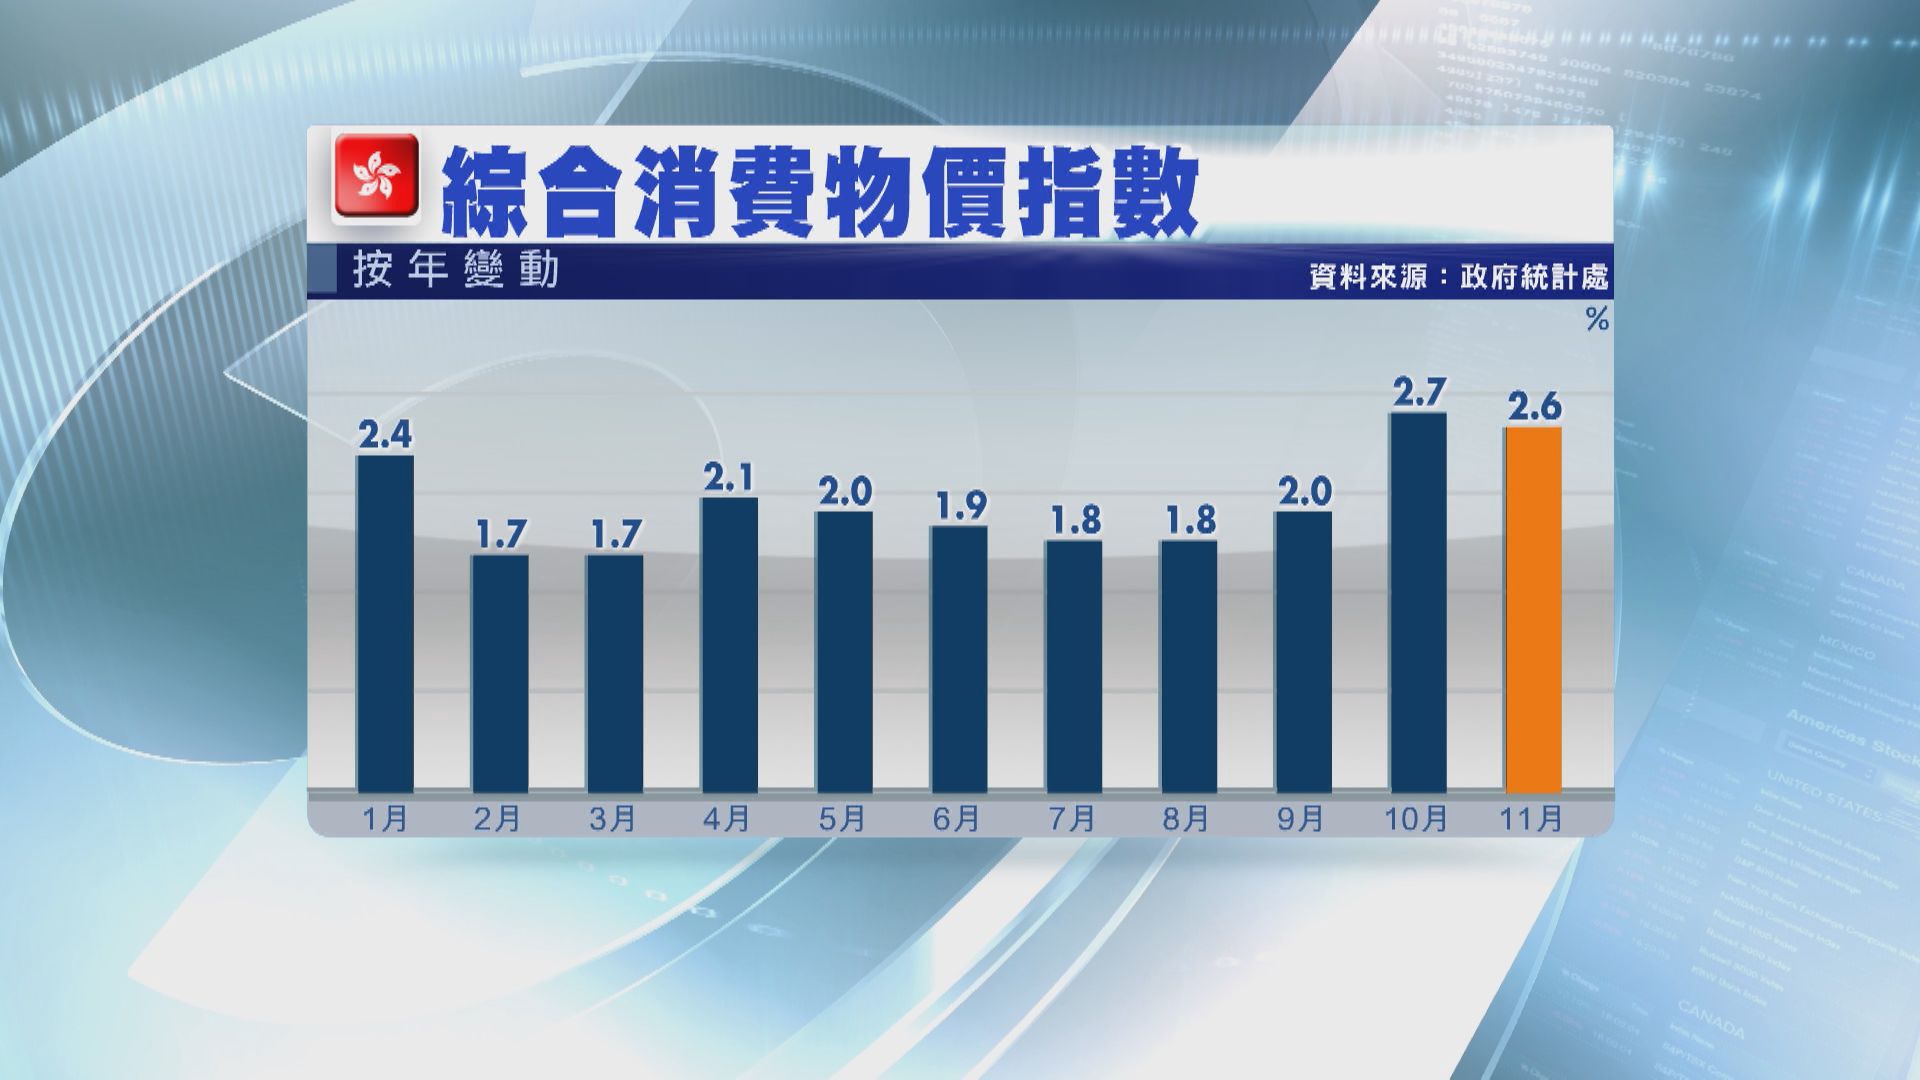 【短期續溫和】本港11月通脹率爆冷放緩至2.6%